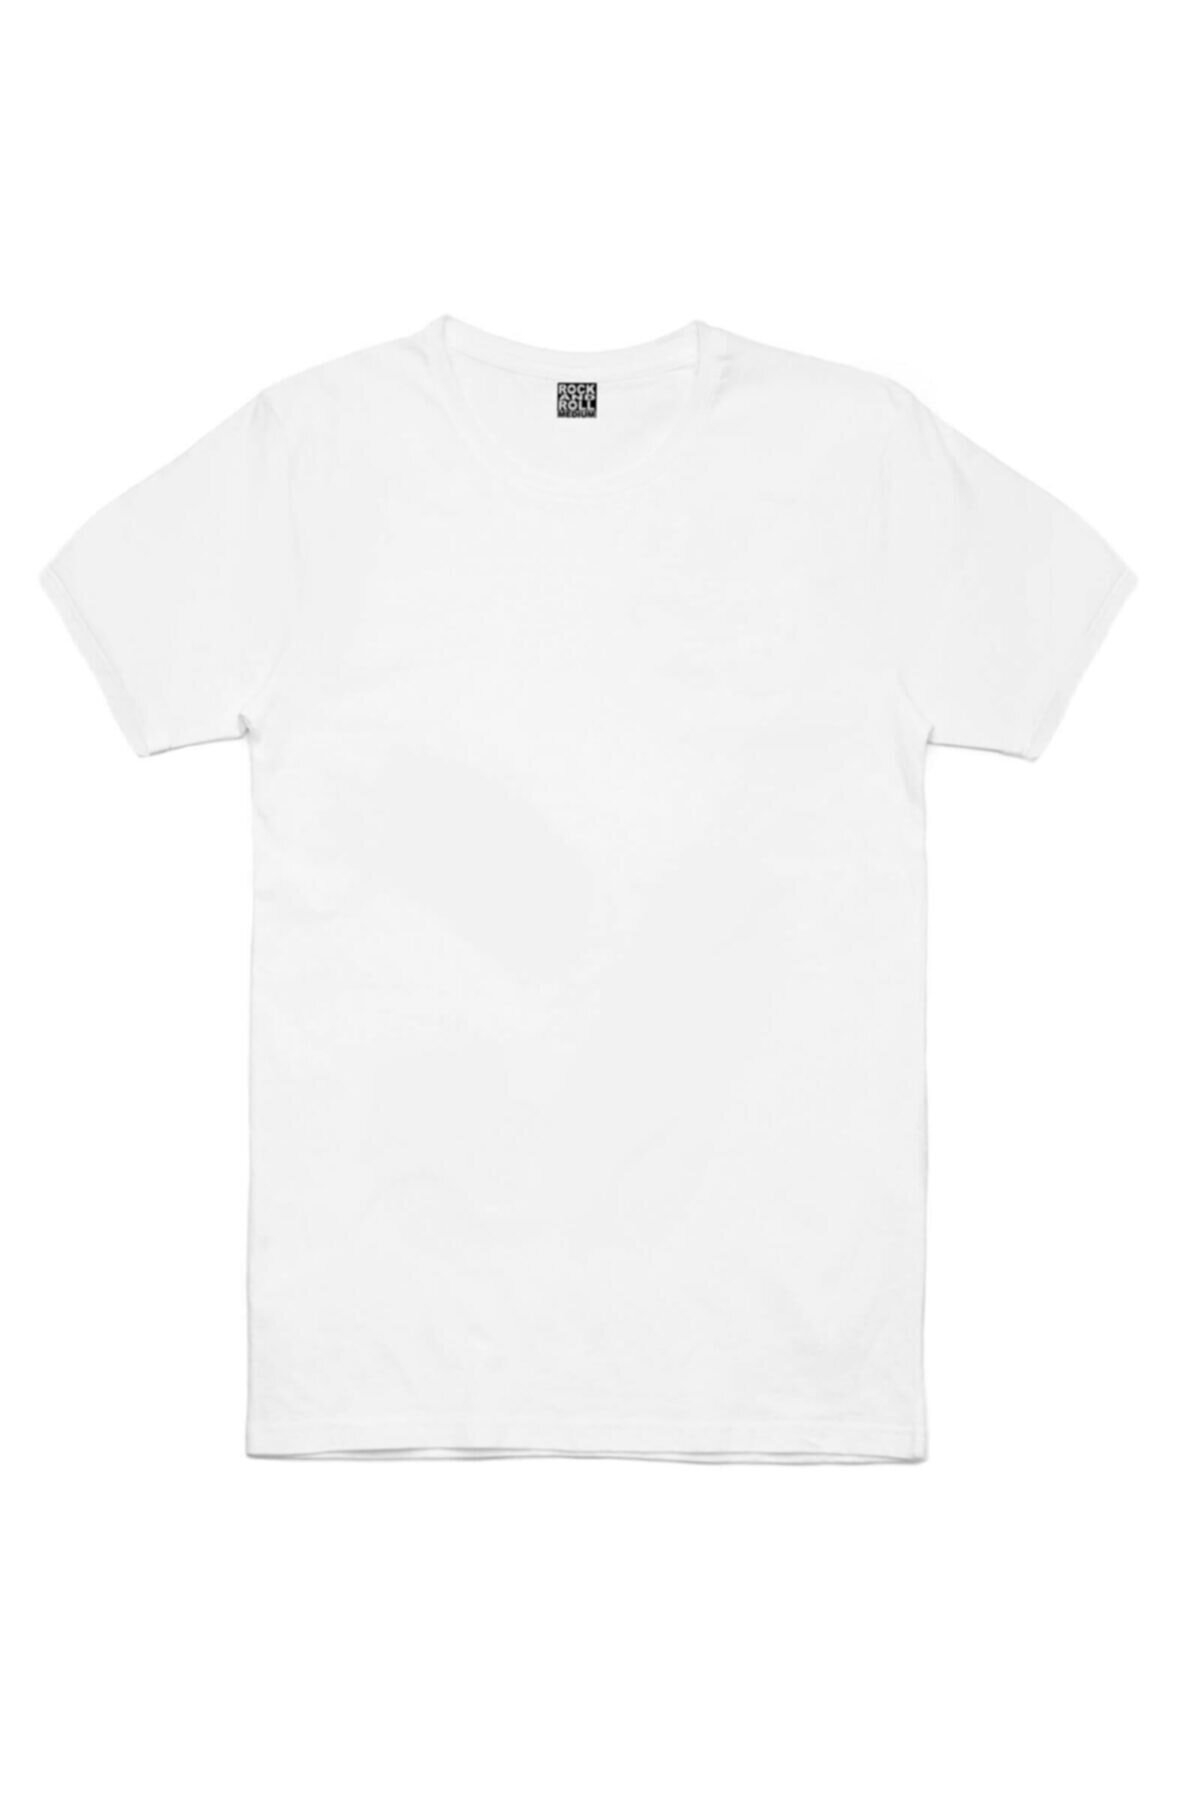 Düz, Baskısız 2 Beyaz, 1 Siyah Kadın 3'lü Eko Paket T-shirt